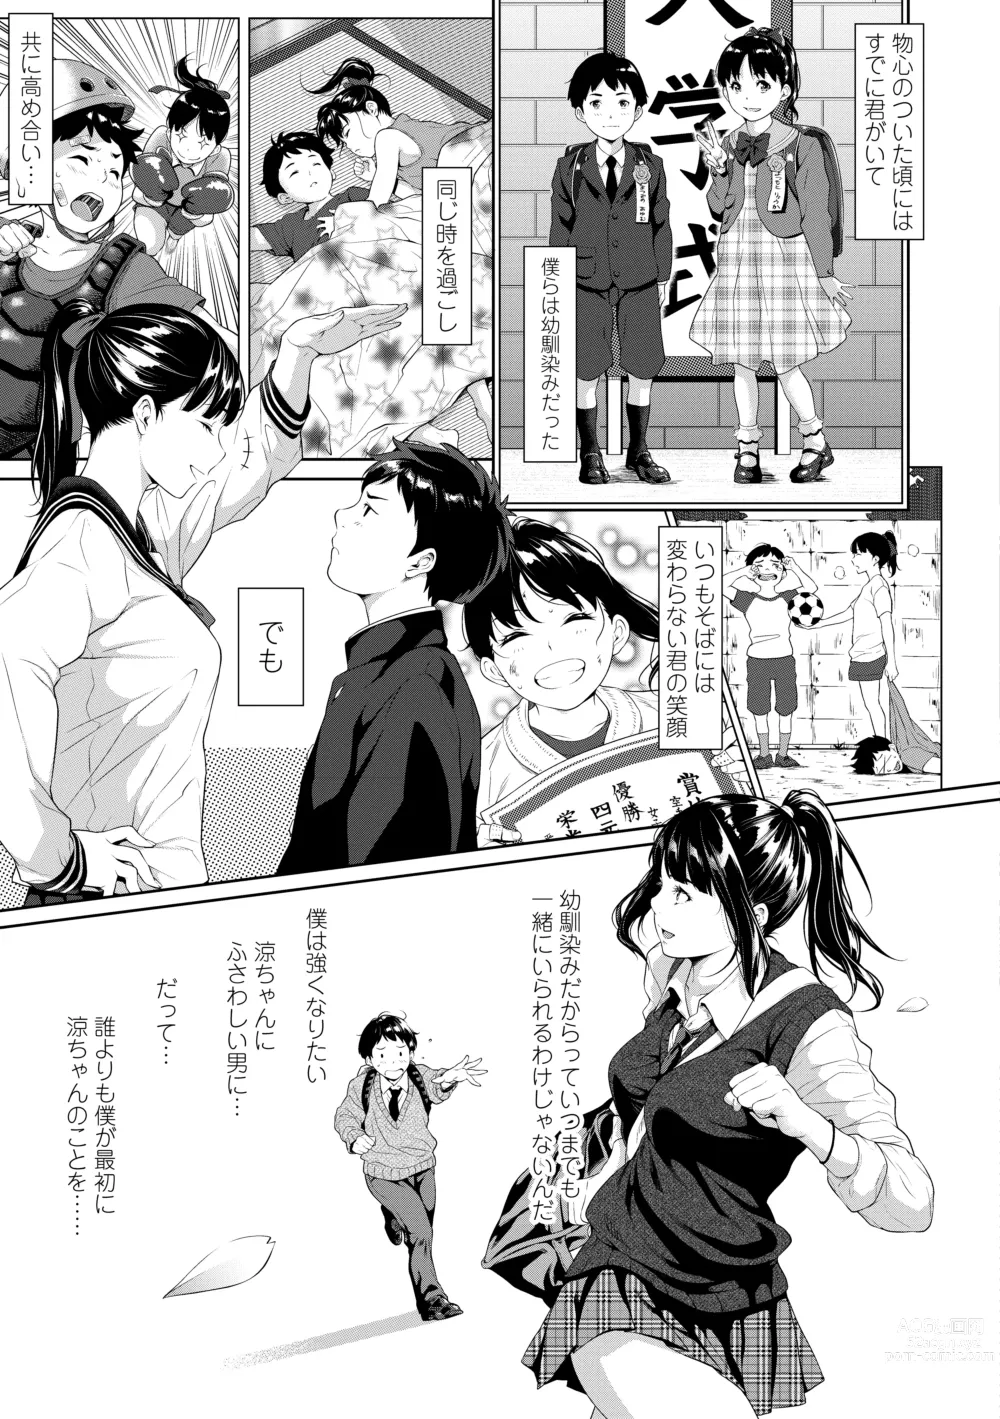 Page 7 of manga Tooi Kimi ni, Boku wa Todokanai - I cant reach you, far away.